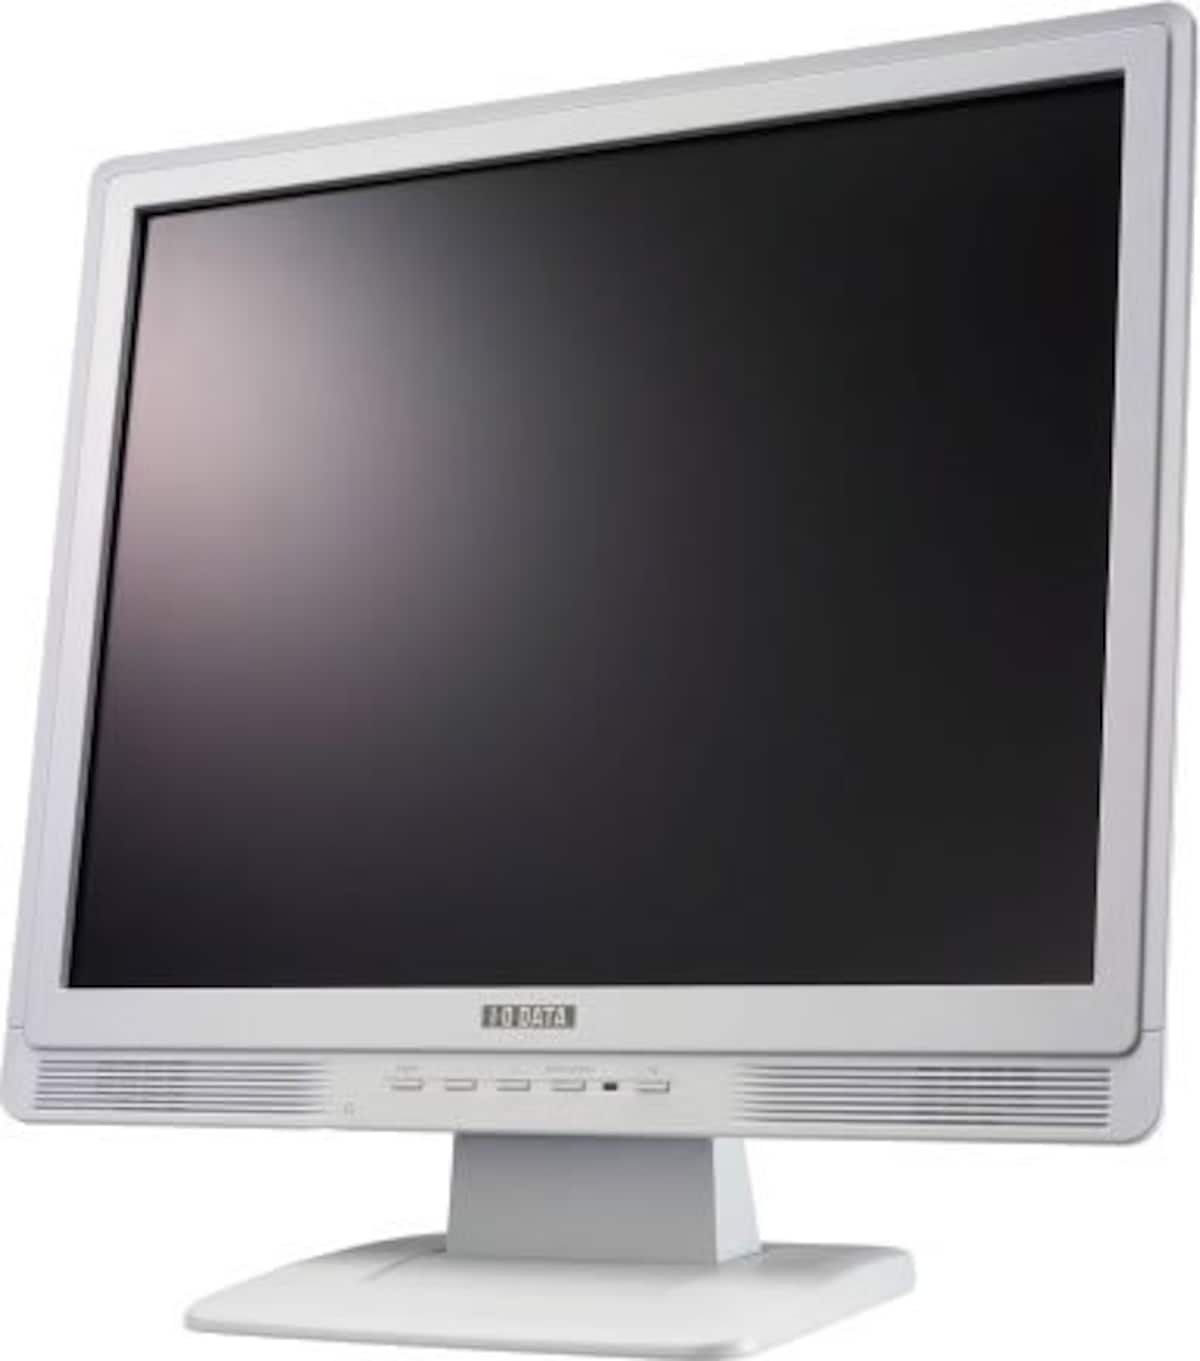 I-O DATA 19インチ液晶ディスプレイ LCD-AD194YW ホワイト (SXGA, デジタル&アナログ, スピーカー内蔵)